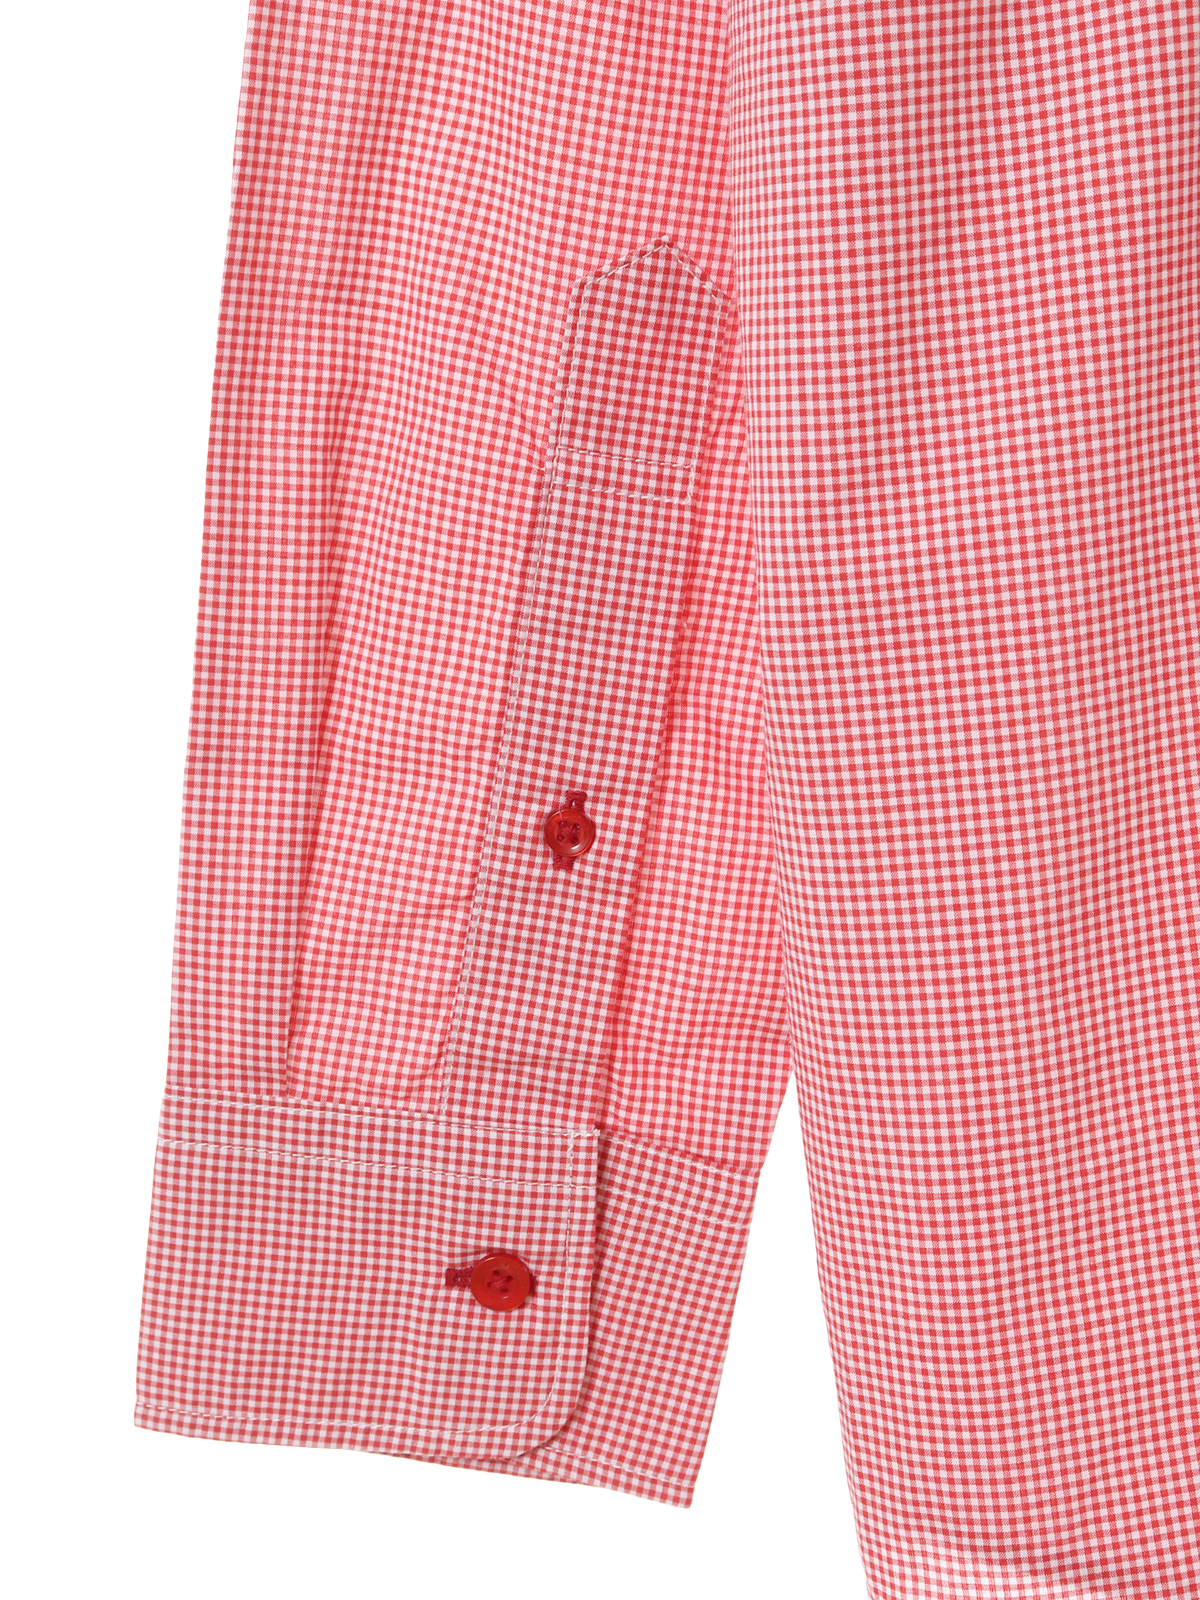 【超美品】ピンクハウス 黒 ギンガムチェック 刺繍 ブラウス